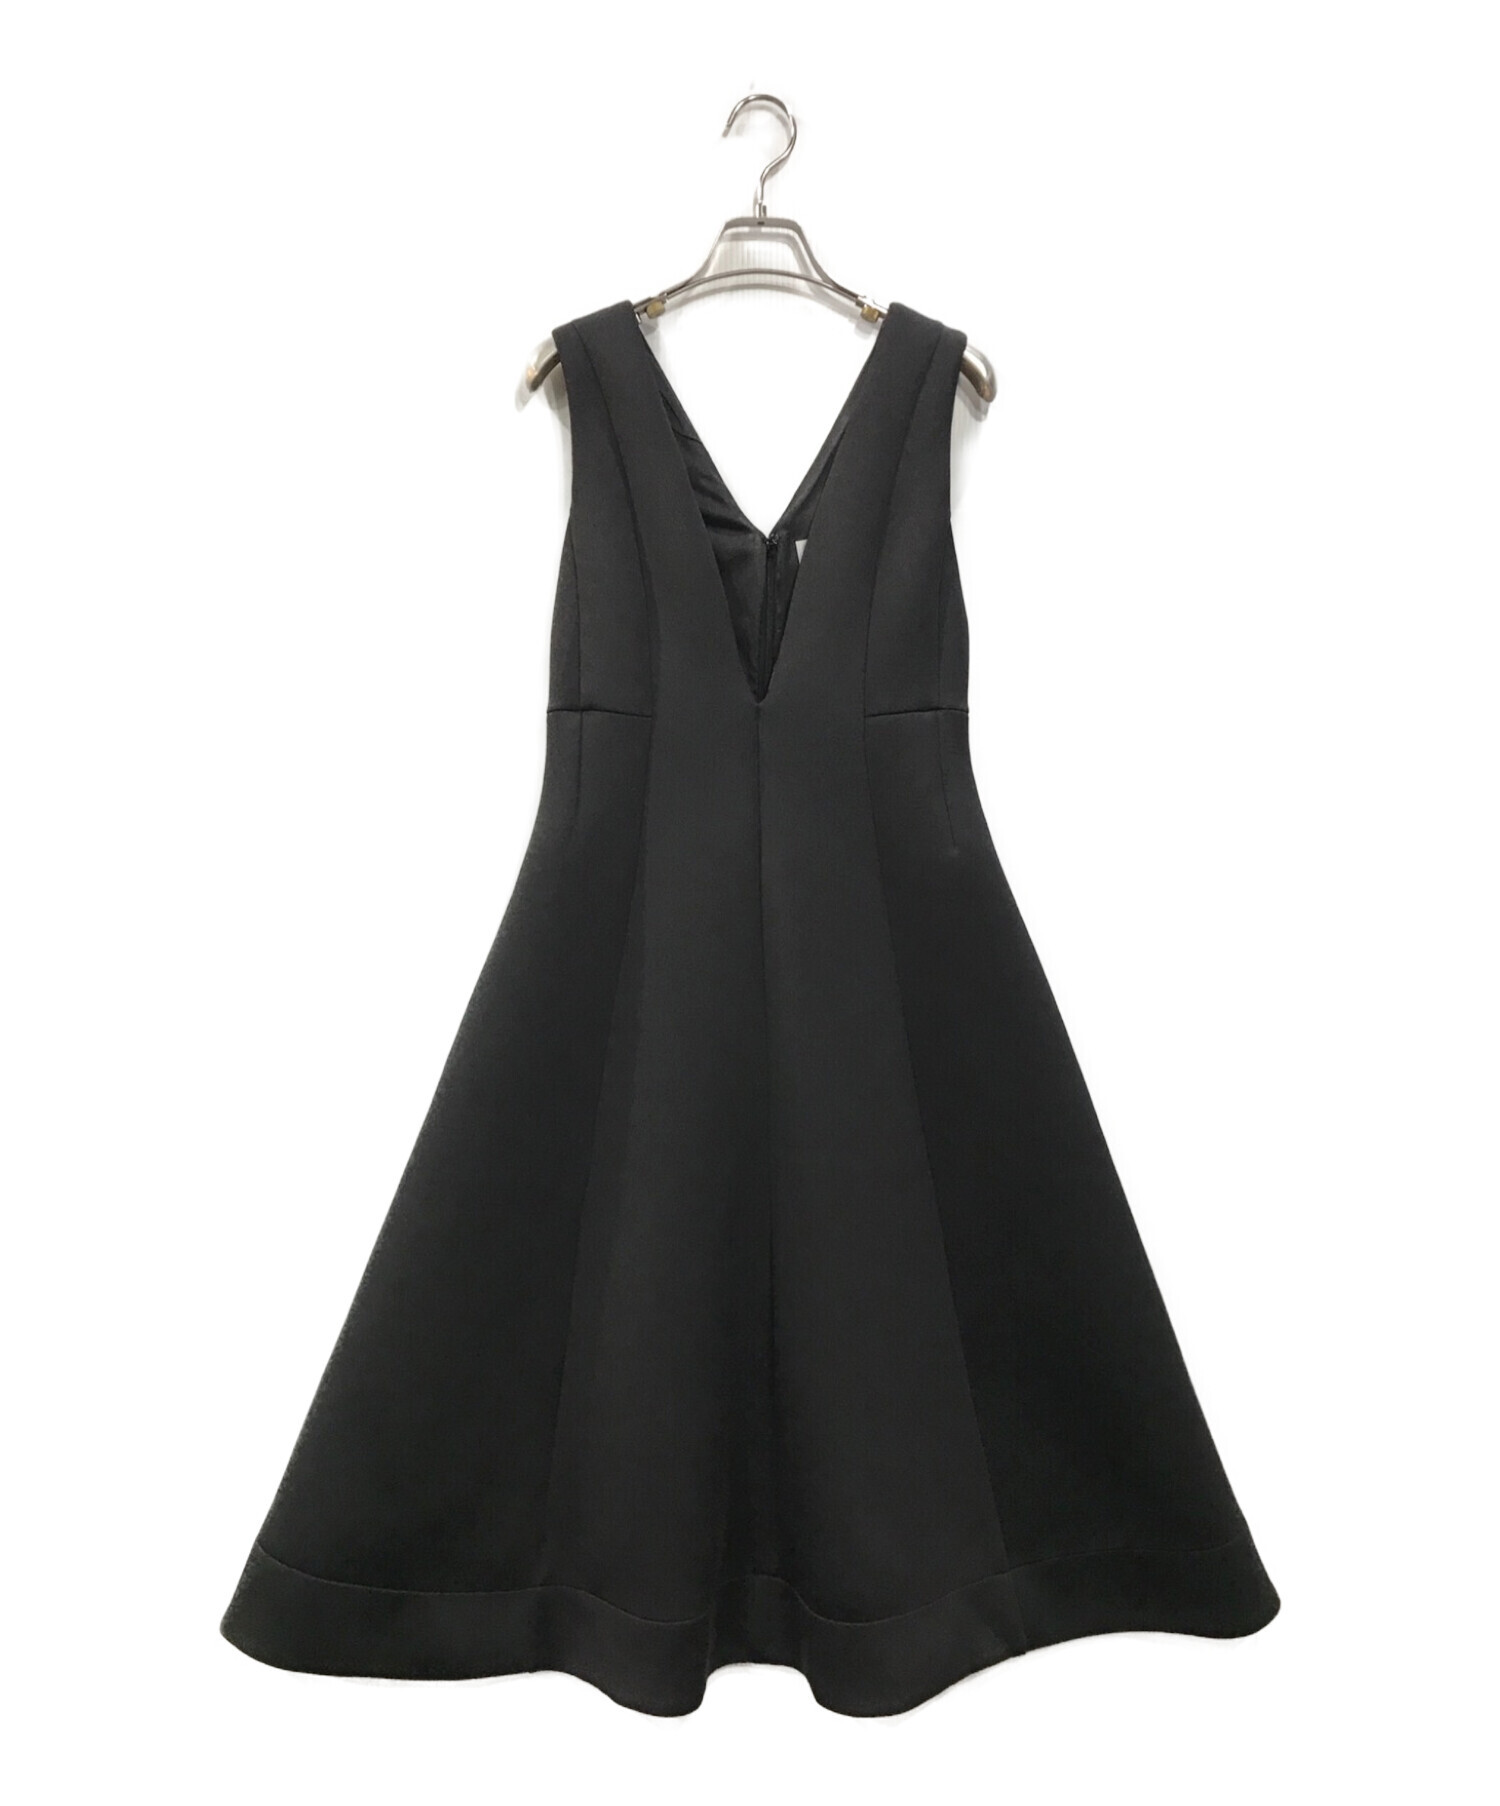 CELFORD (セルフォード) フレアジャンパードレス ブラック サイズ:36